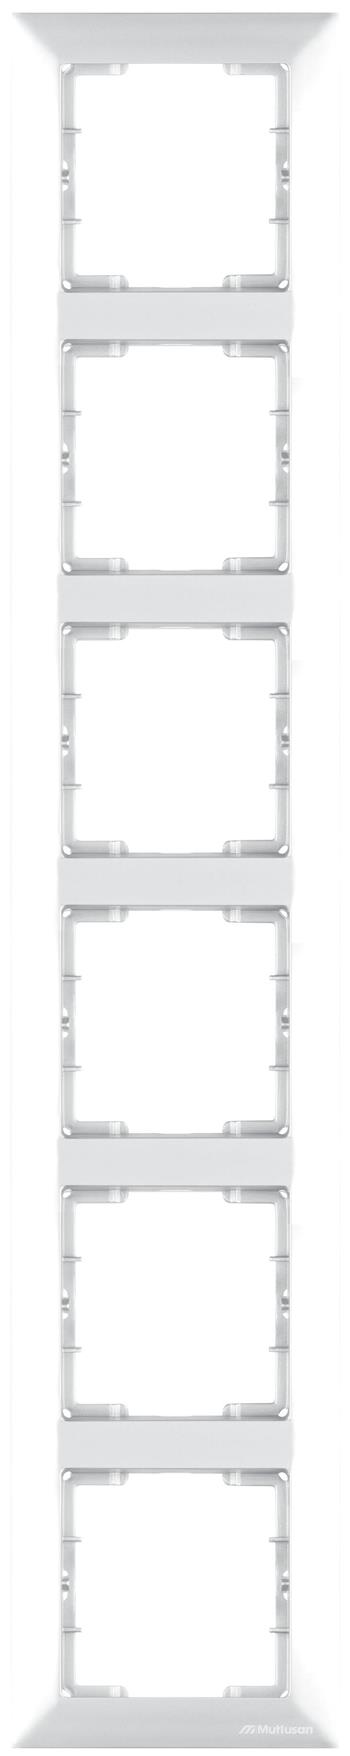 6 fach Rahmen vertikal Weiß (CANDELA Standard)